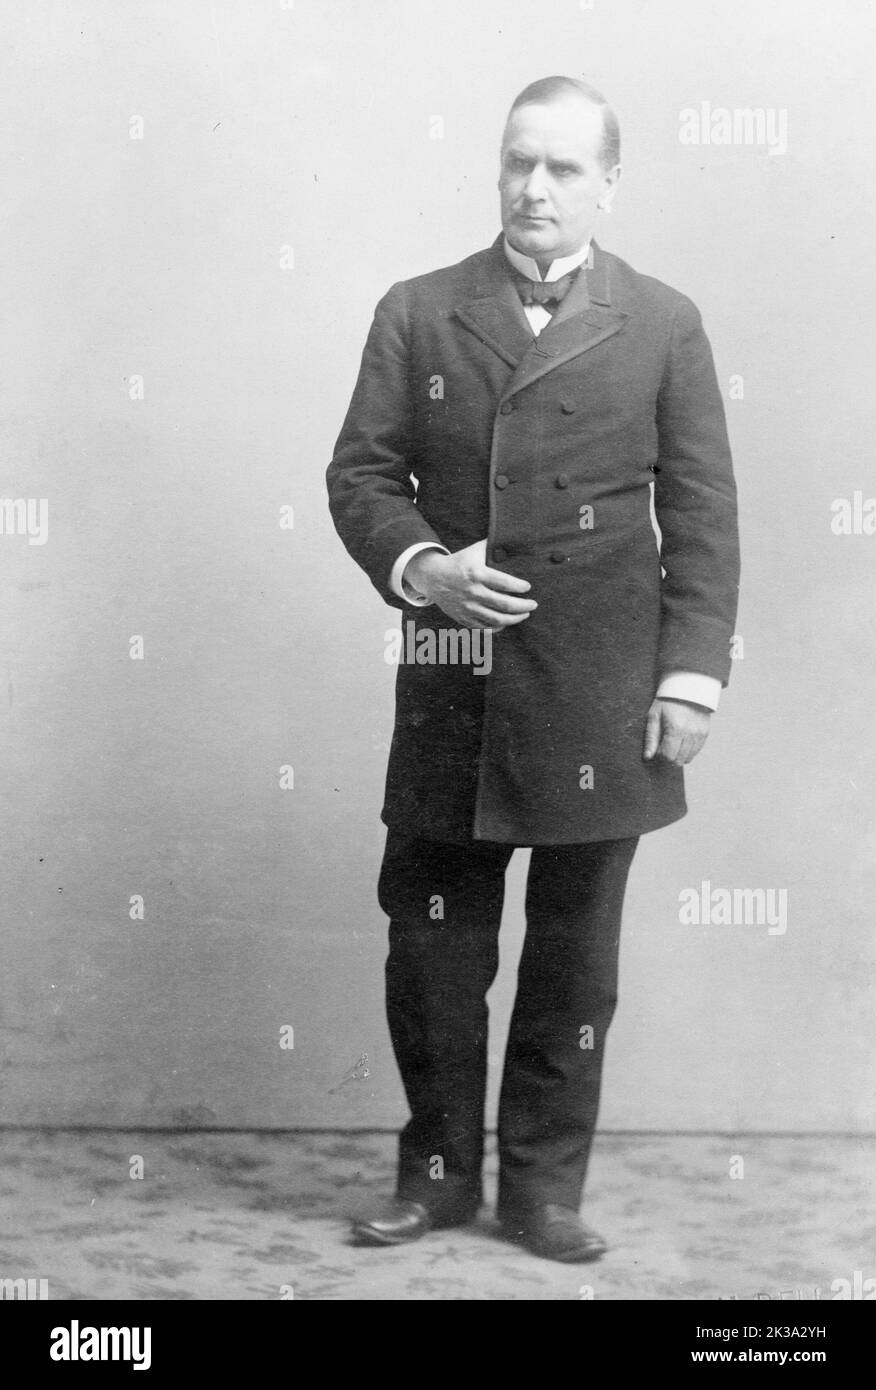 Ein Porträt des US-Präsidenten William McKinley aus dem Jahr 1901, als er 58 Jahre alt war. McKinley war 25. der Präsident der USA und der dritte von vier, die ermordet wurden. Er wurde am 6.. September 1901 von Leon Czolgosz angeschossen. Wie James Garfield erholte sich McKinley kurz von den Wunden, um einige Zeit später an einer Sepsis zu sterben. In diesem Stich wird er als Präsidentschaftskandidat gesehen. Stockfoto